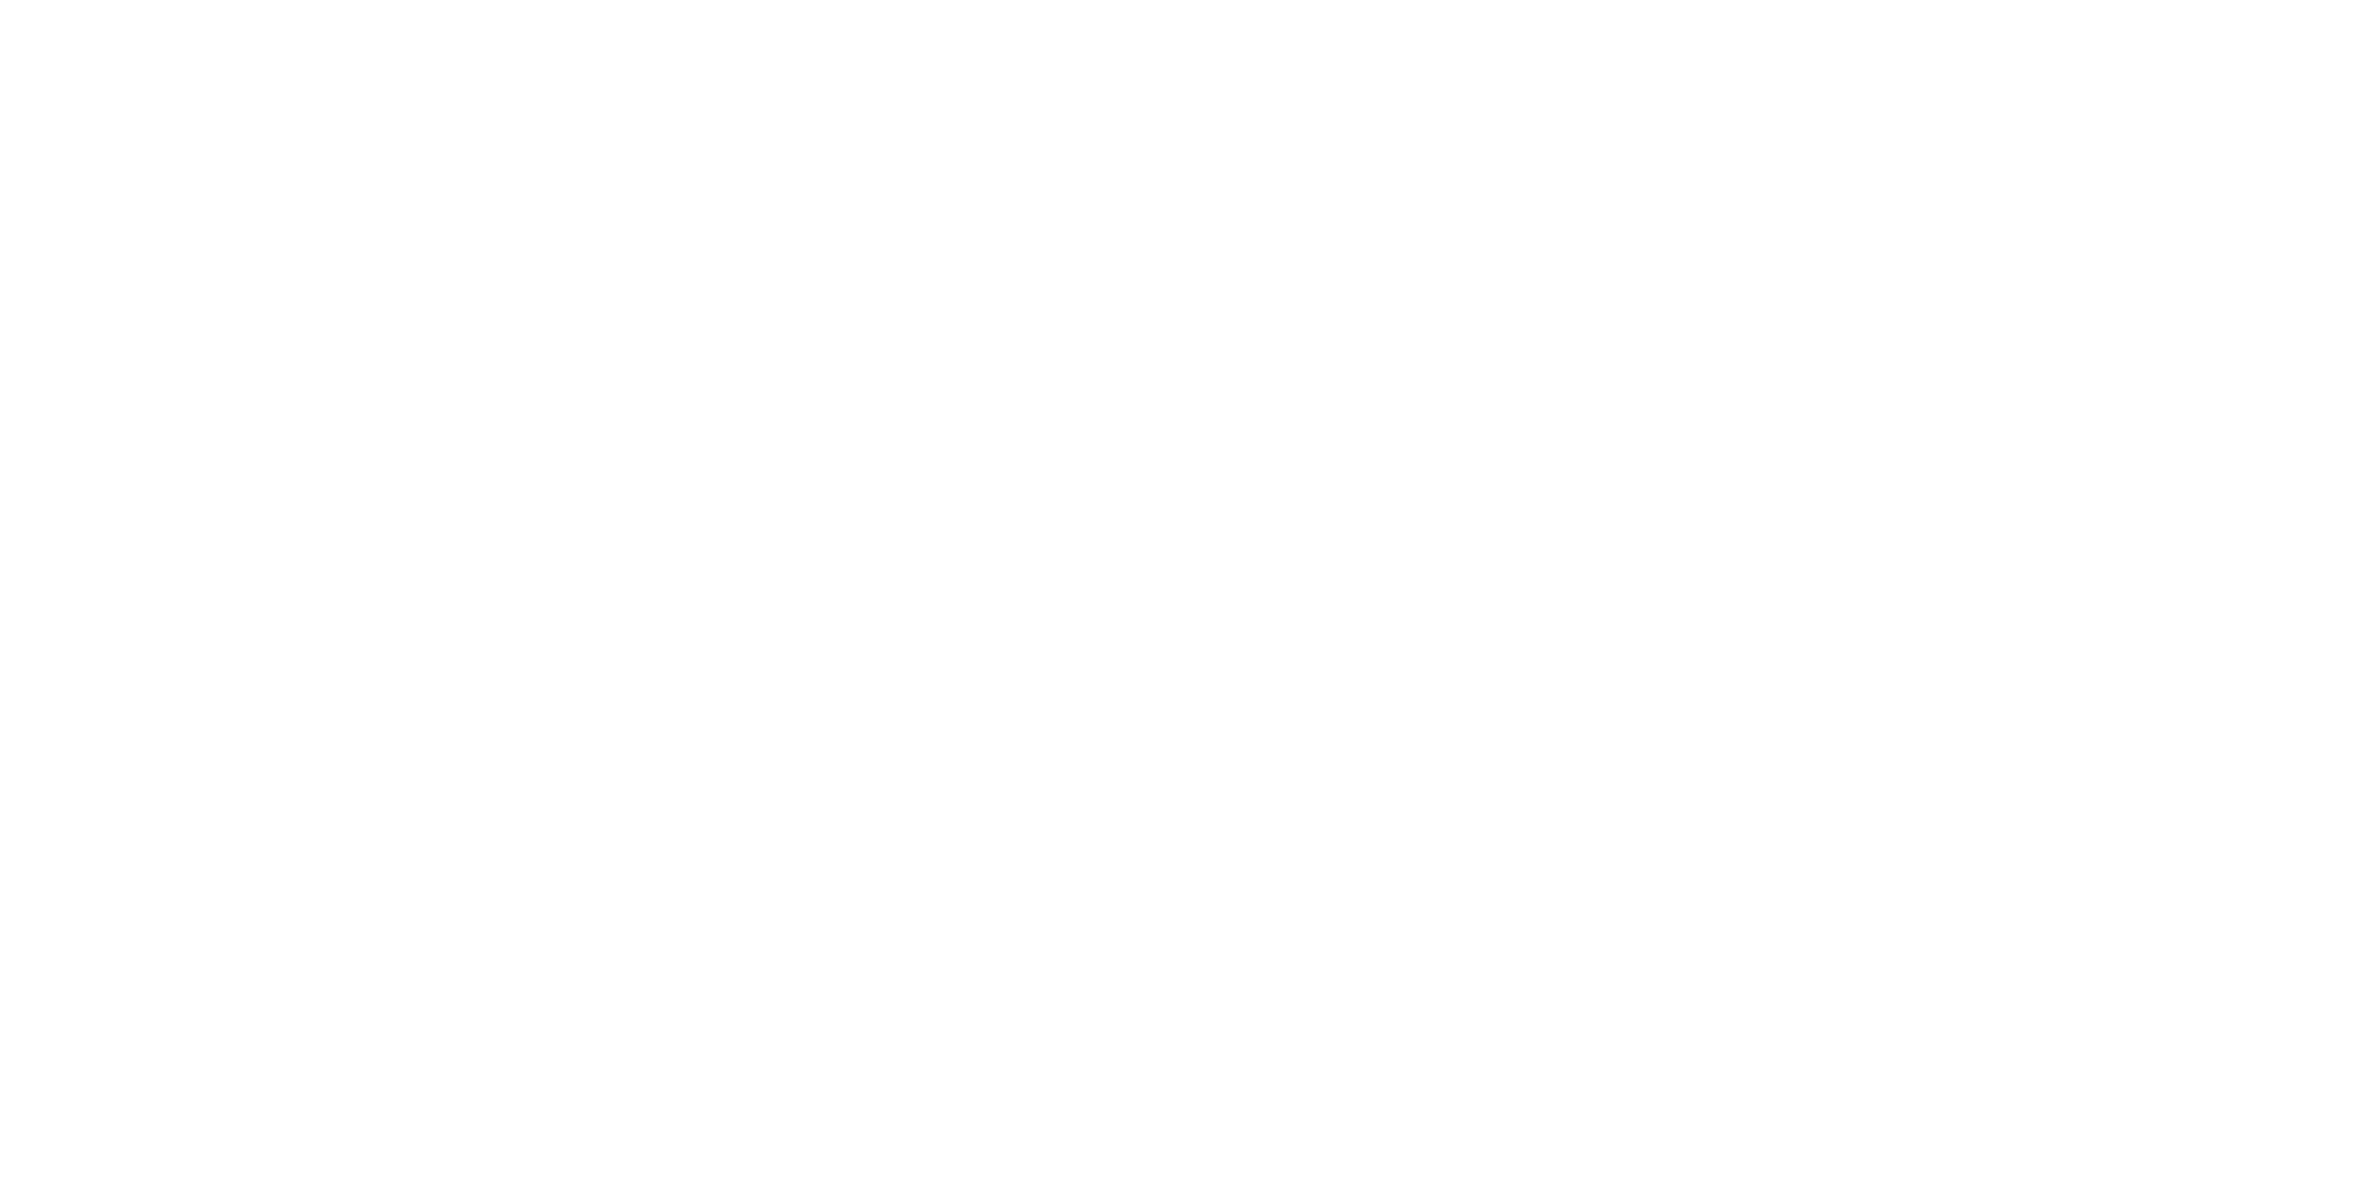 Gheeraert Slaapcomfort